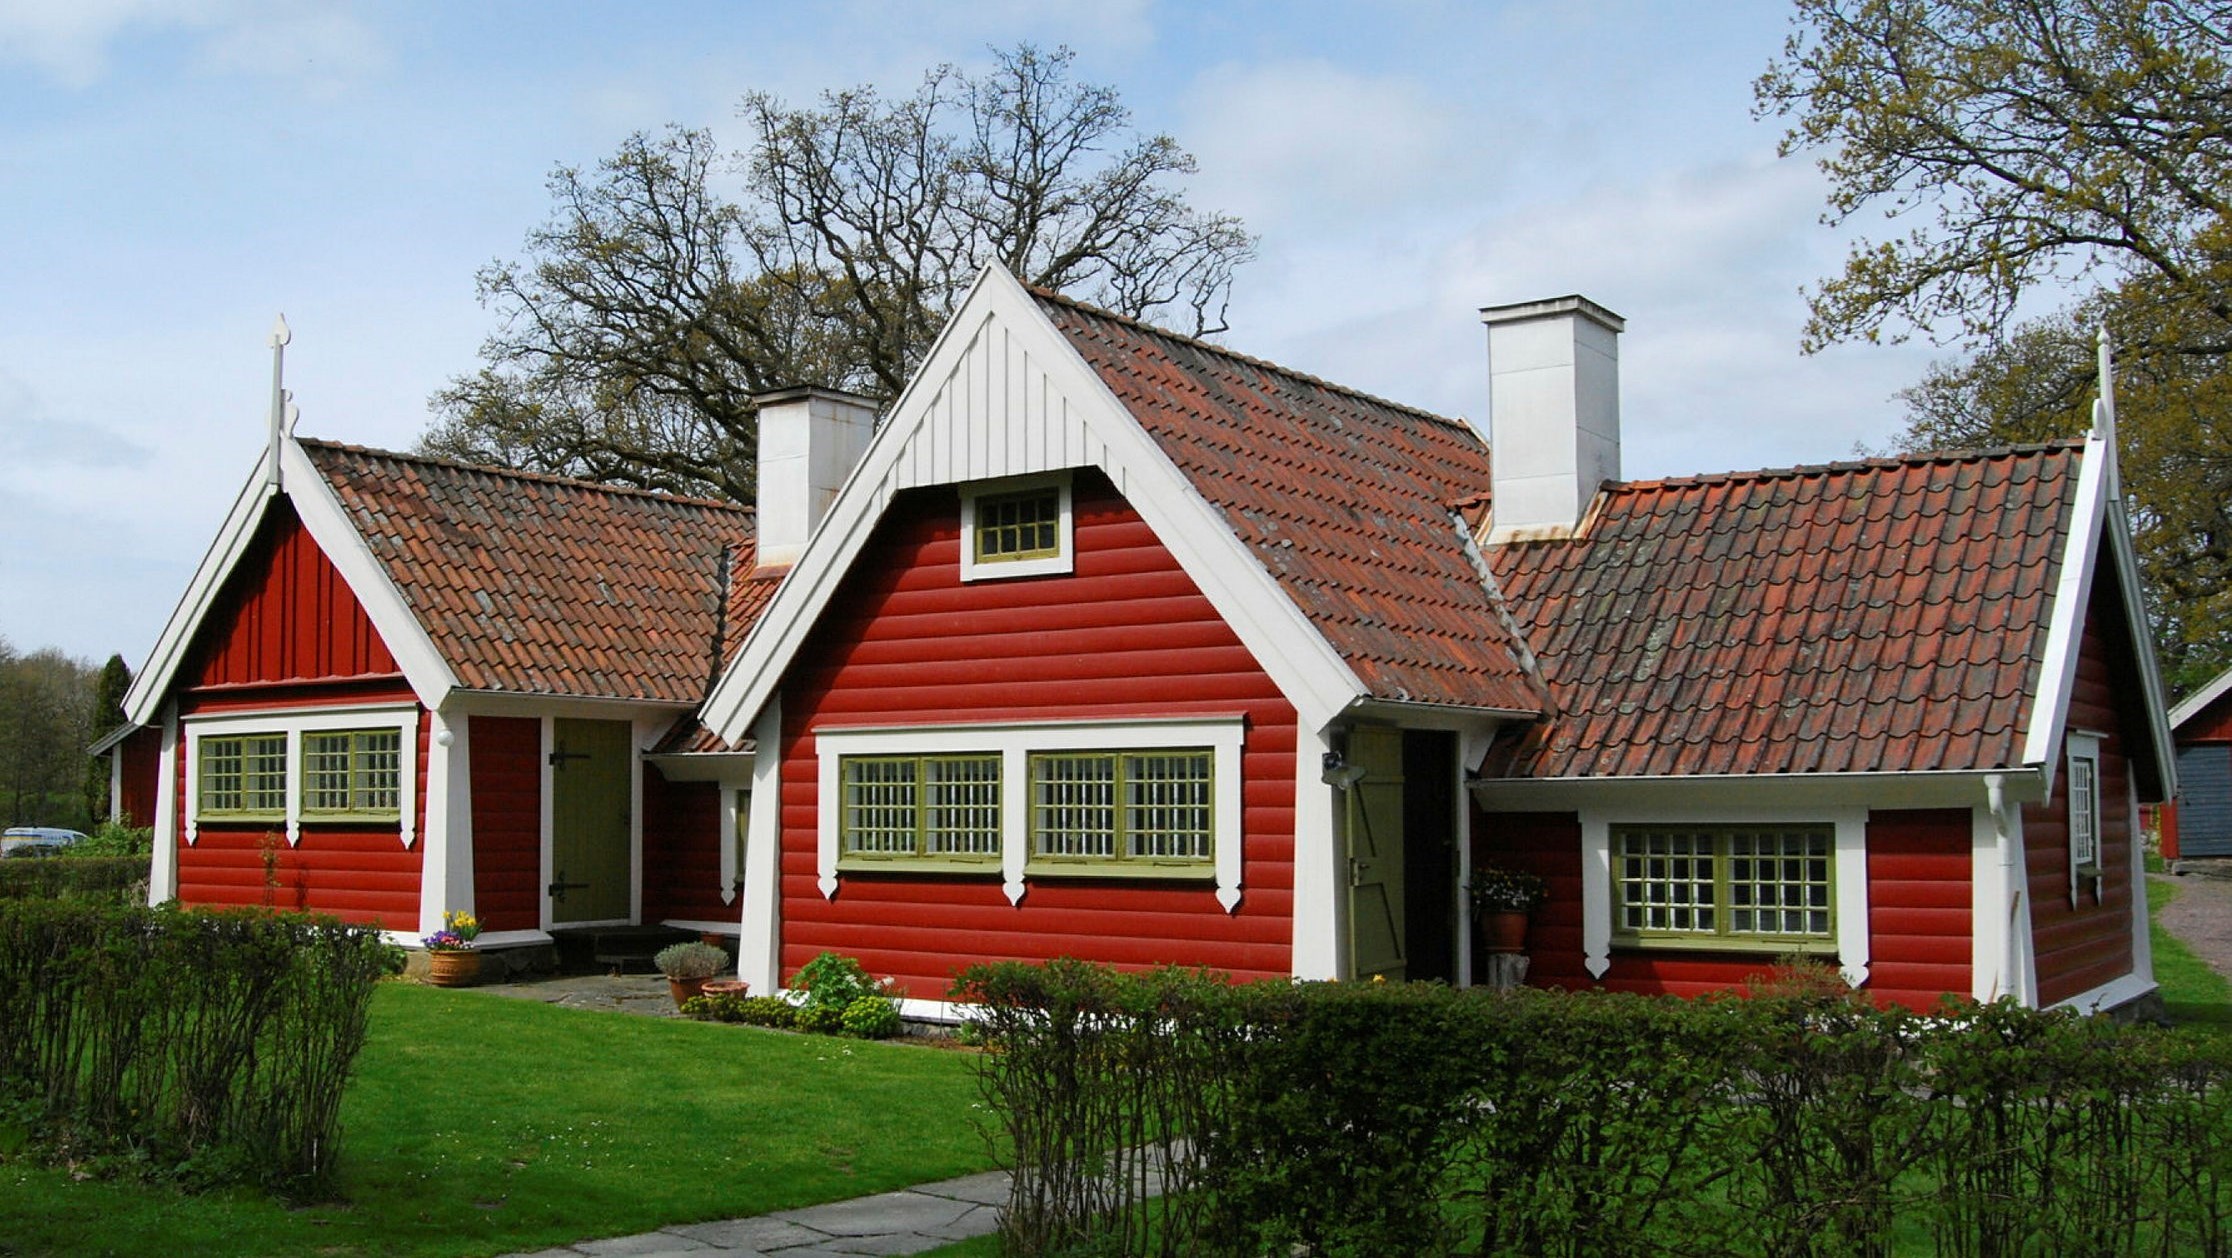 Ett hus med flera huskroppar och stort takfall målat i rött med vita foder och gröna fönster.